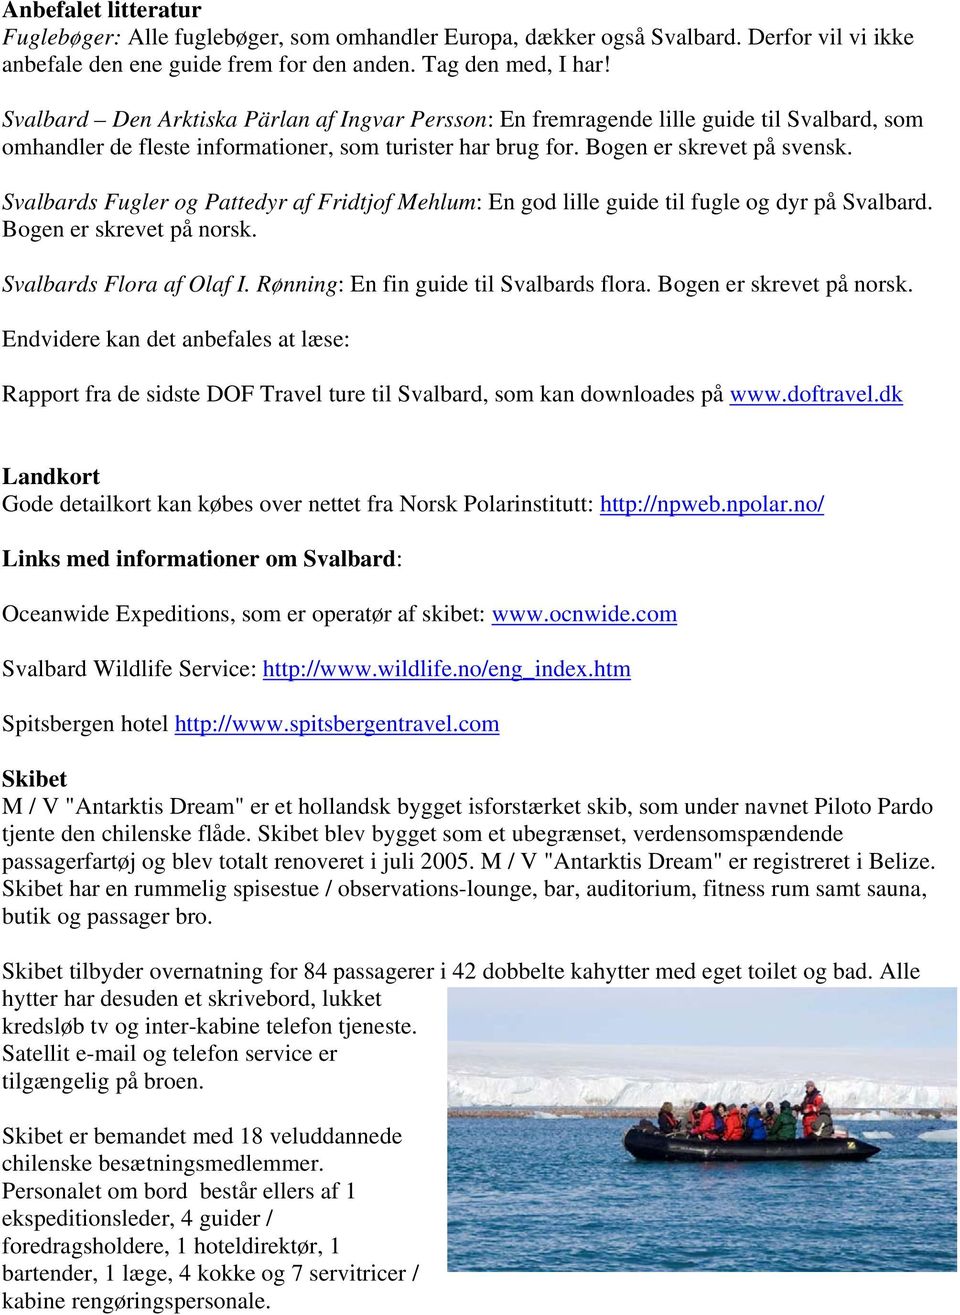 Svalbards Fugler og Pattedyr af Fridtjof Mehlum: En god lille guide til fugle og dyr på Svalbard. Bogen er skrevet på norsk. Svalbards Flora af Olaf I. Rønning: En fin guide til Svalbards flora.